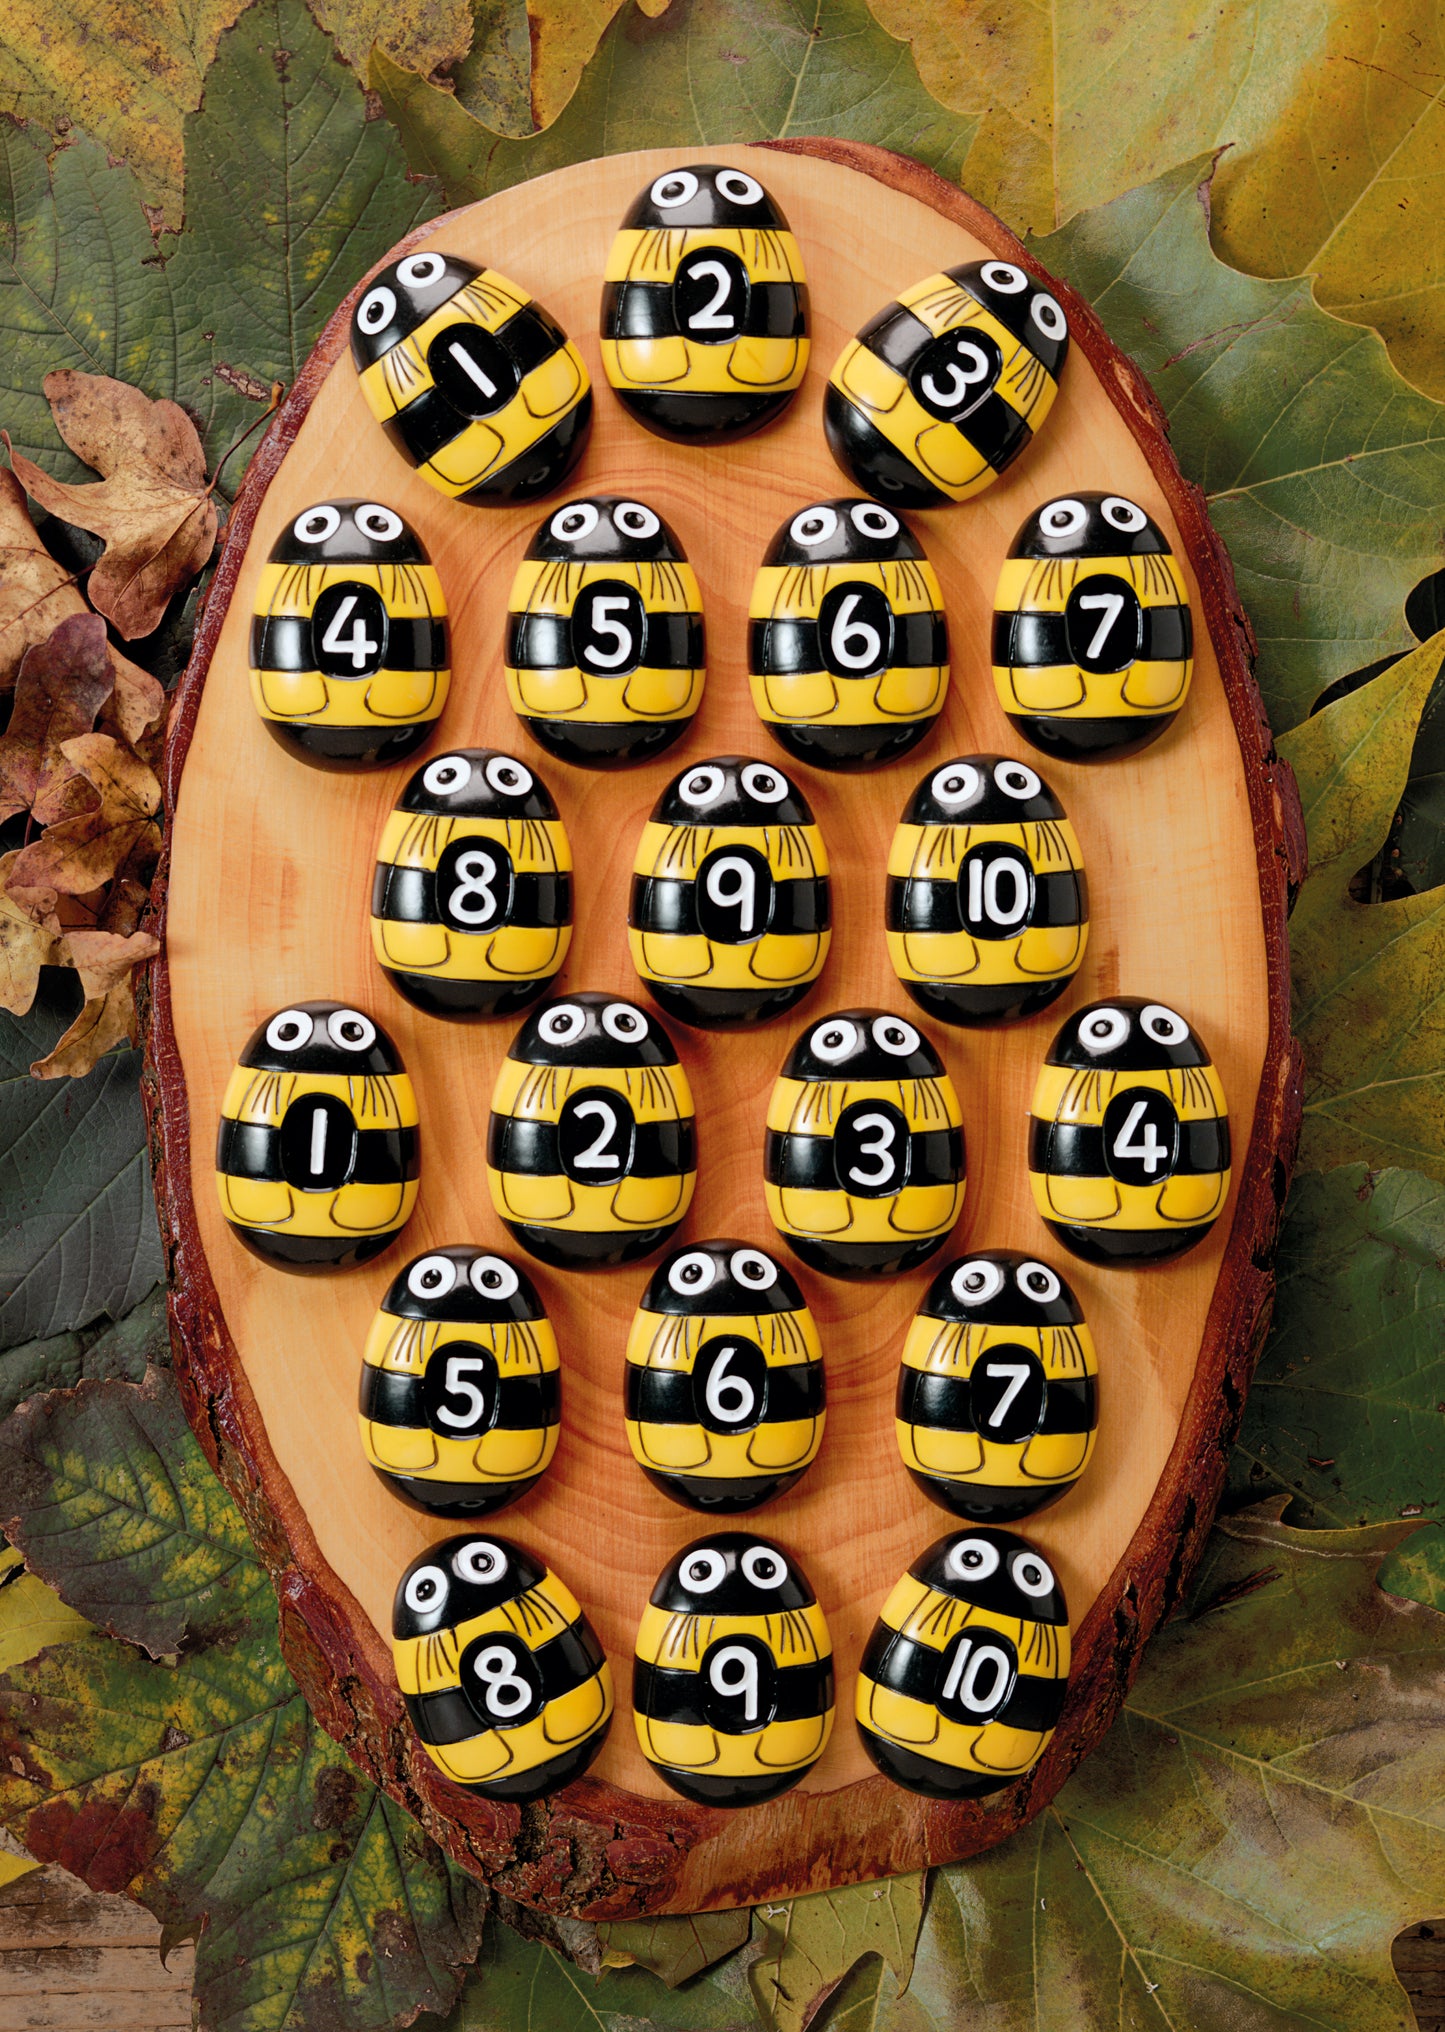 Honey bee number stones - SALE